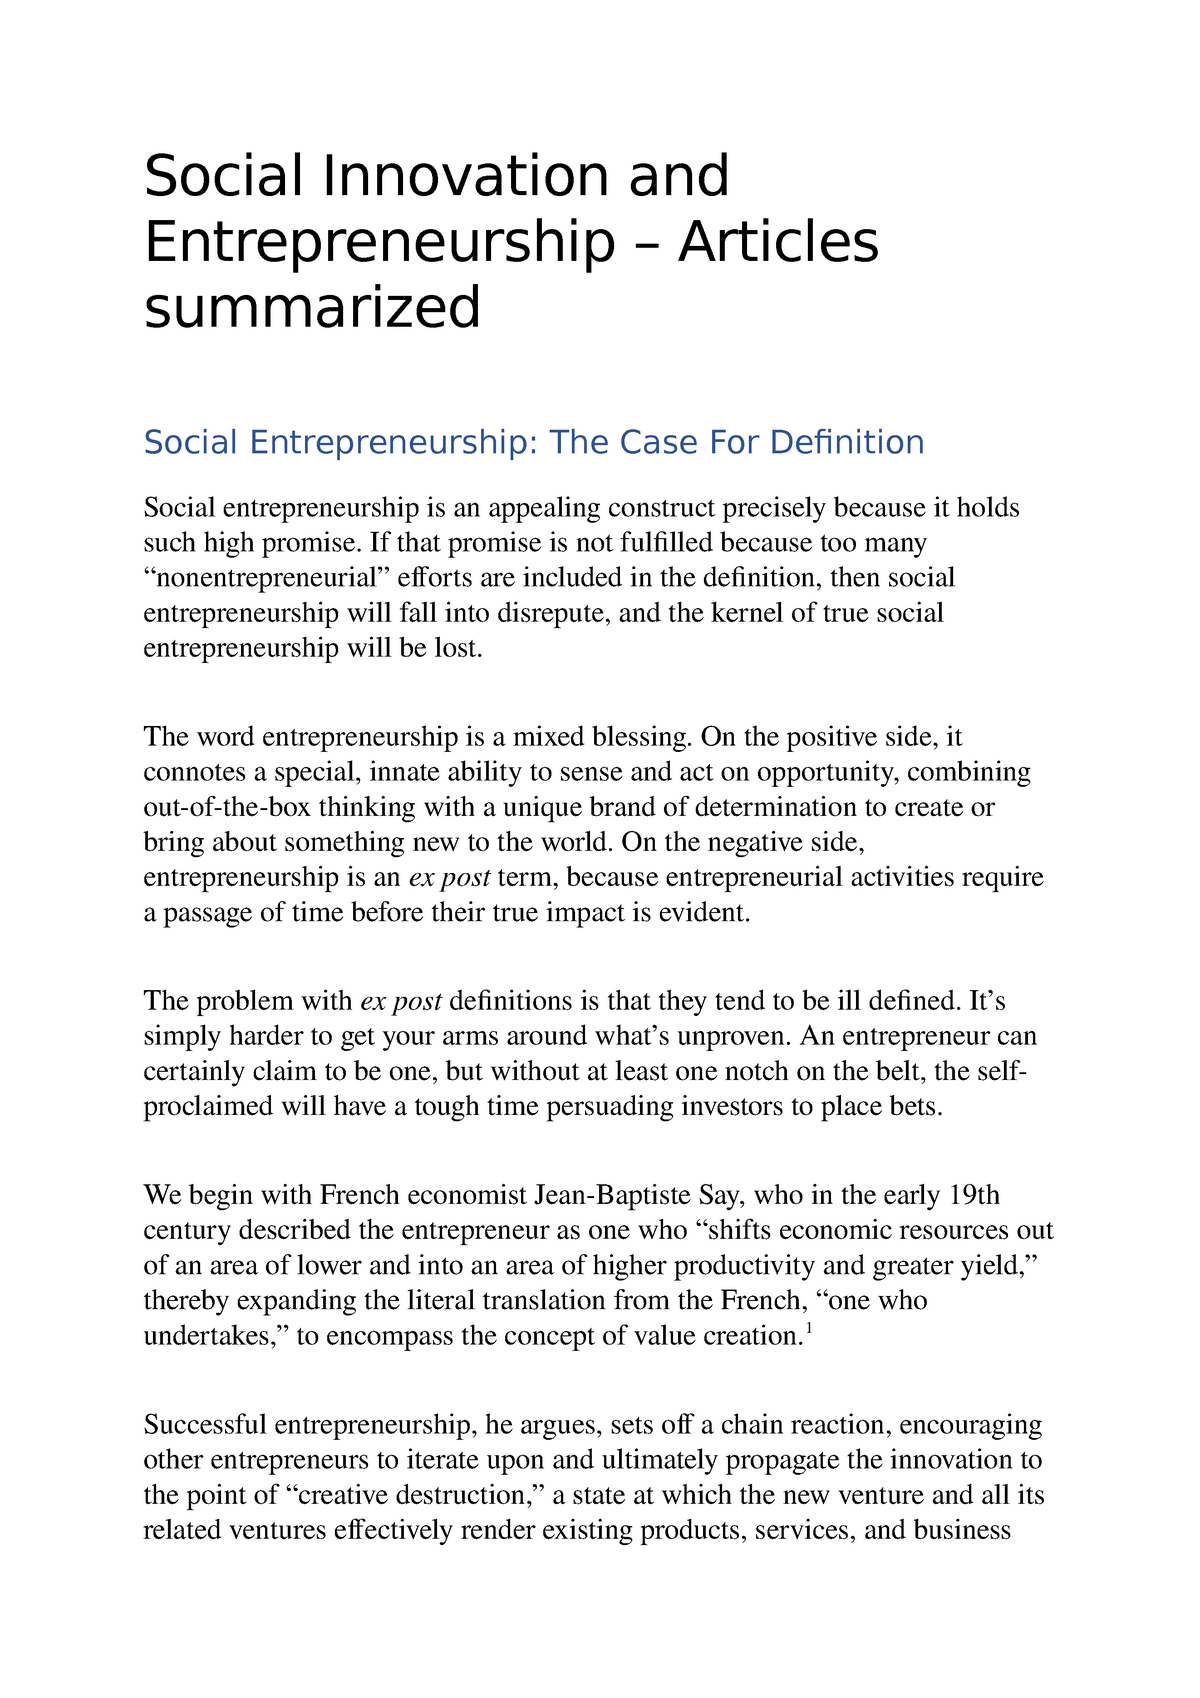 thesis topics on social entrepreneurship